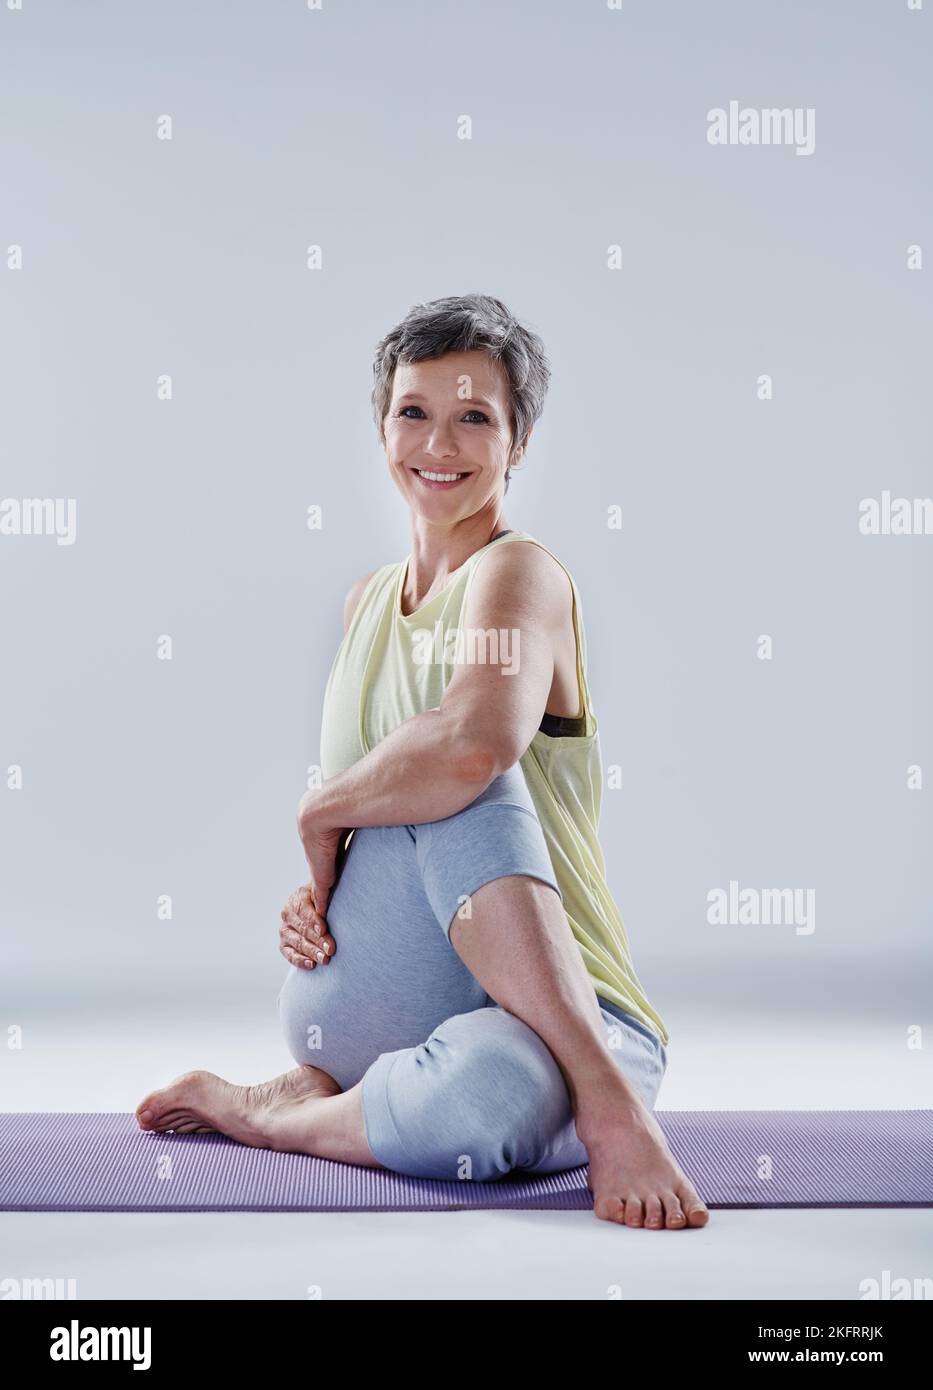 Solo qualche tratto in più. Ritratto completo di una donna attraente che si allunga prima dello yoga. Foto Stock